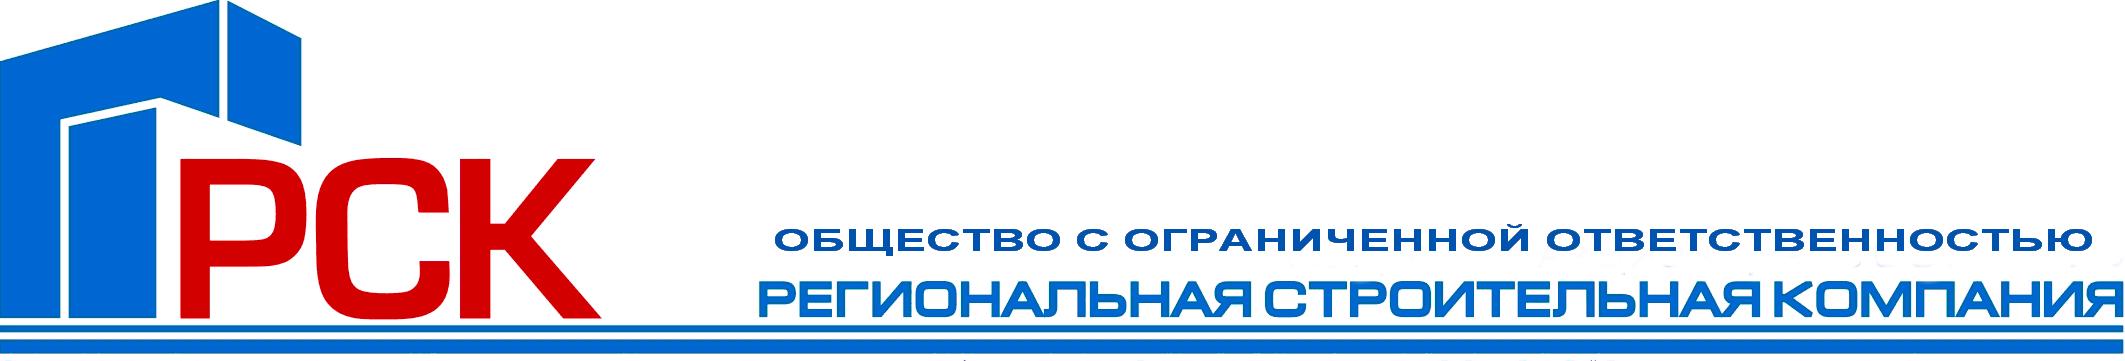 Рск самара. Региональная строительная компания логотип. Региональная строительная компания Москва. ООО РСК. РСК региональная строительная компания.